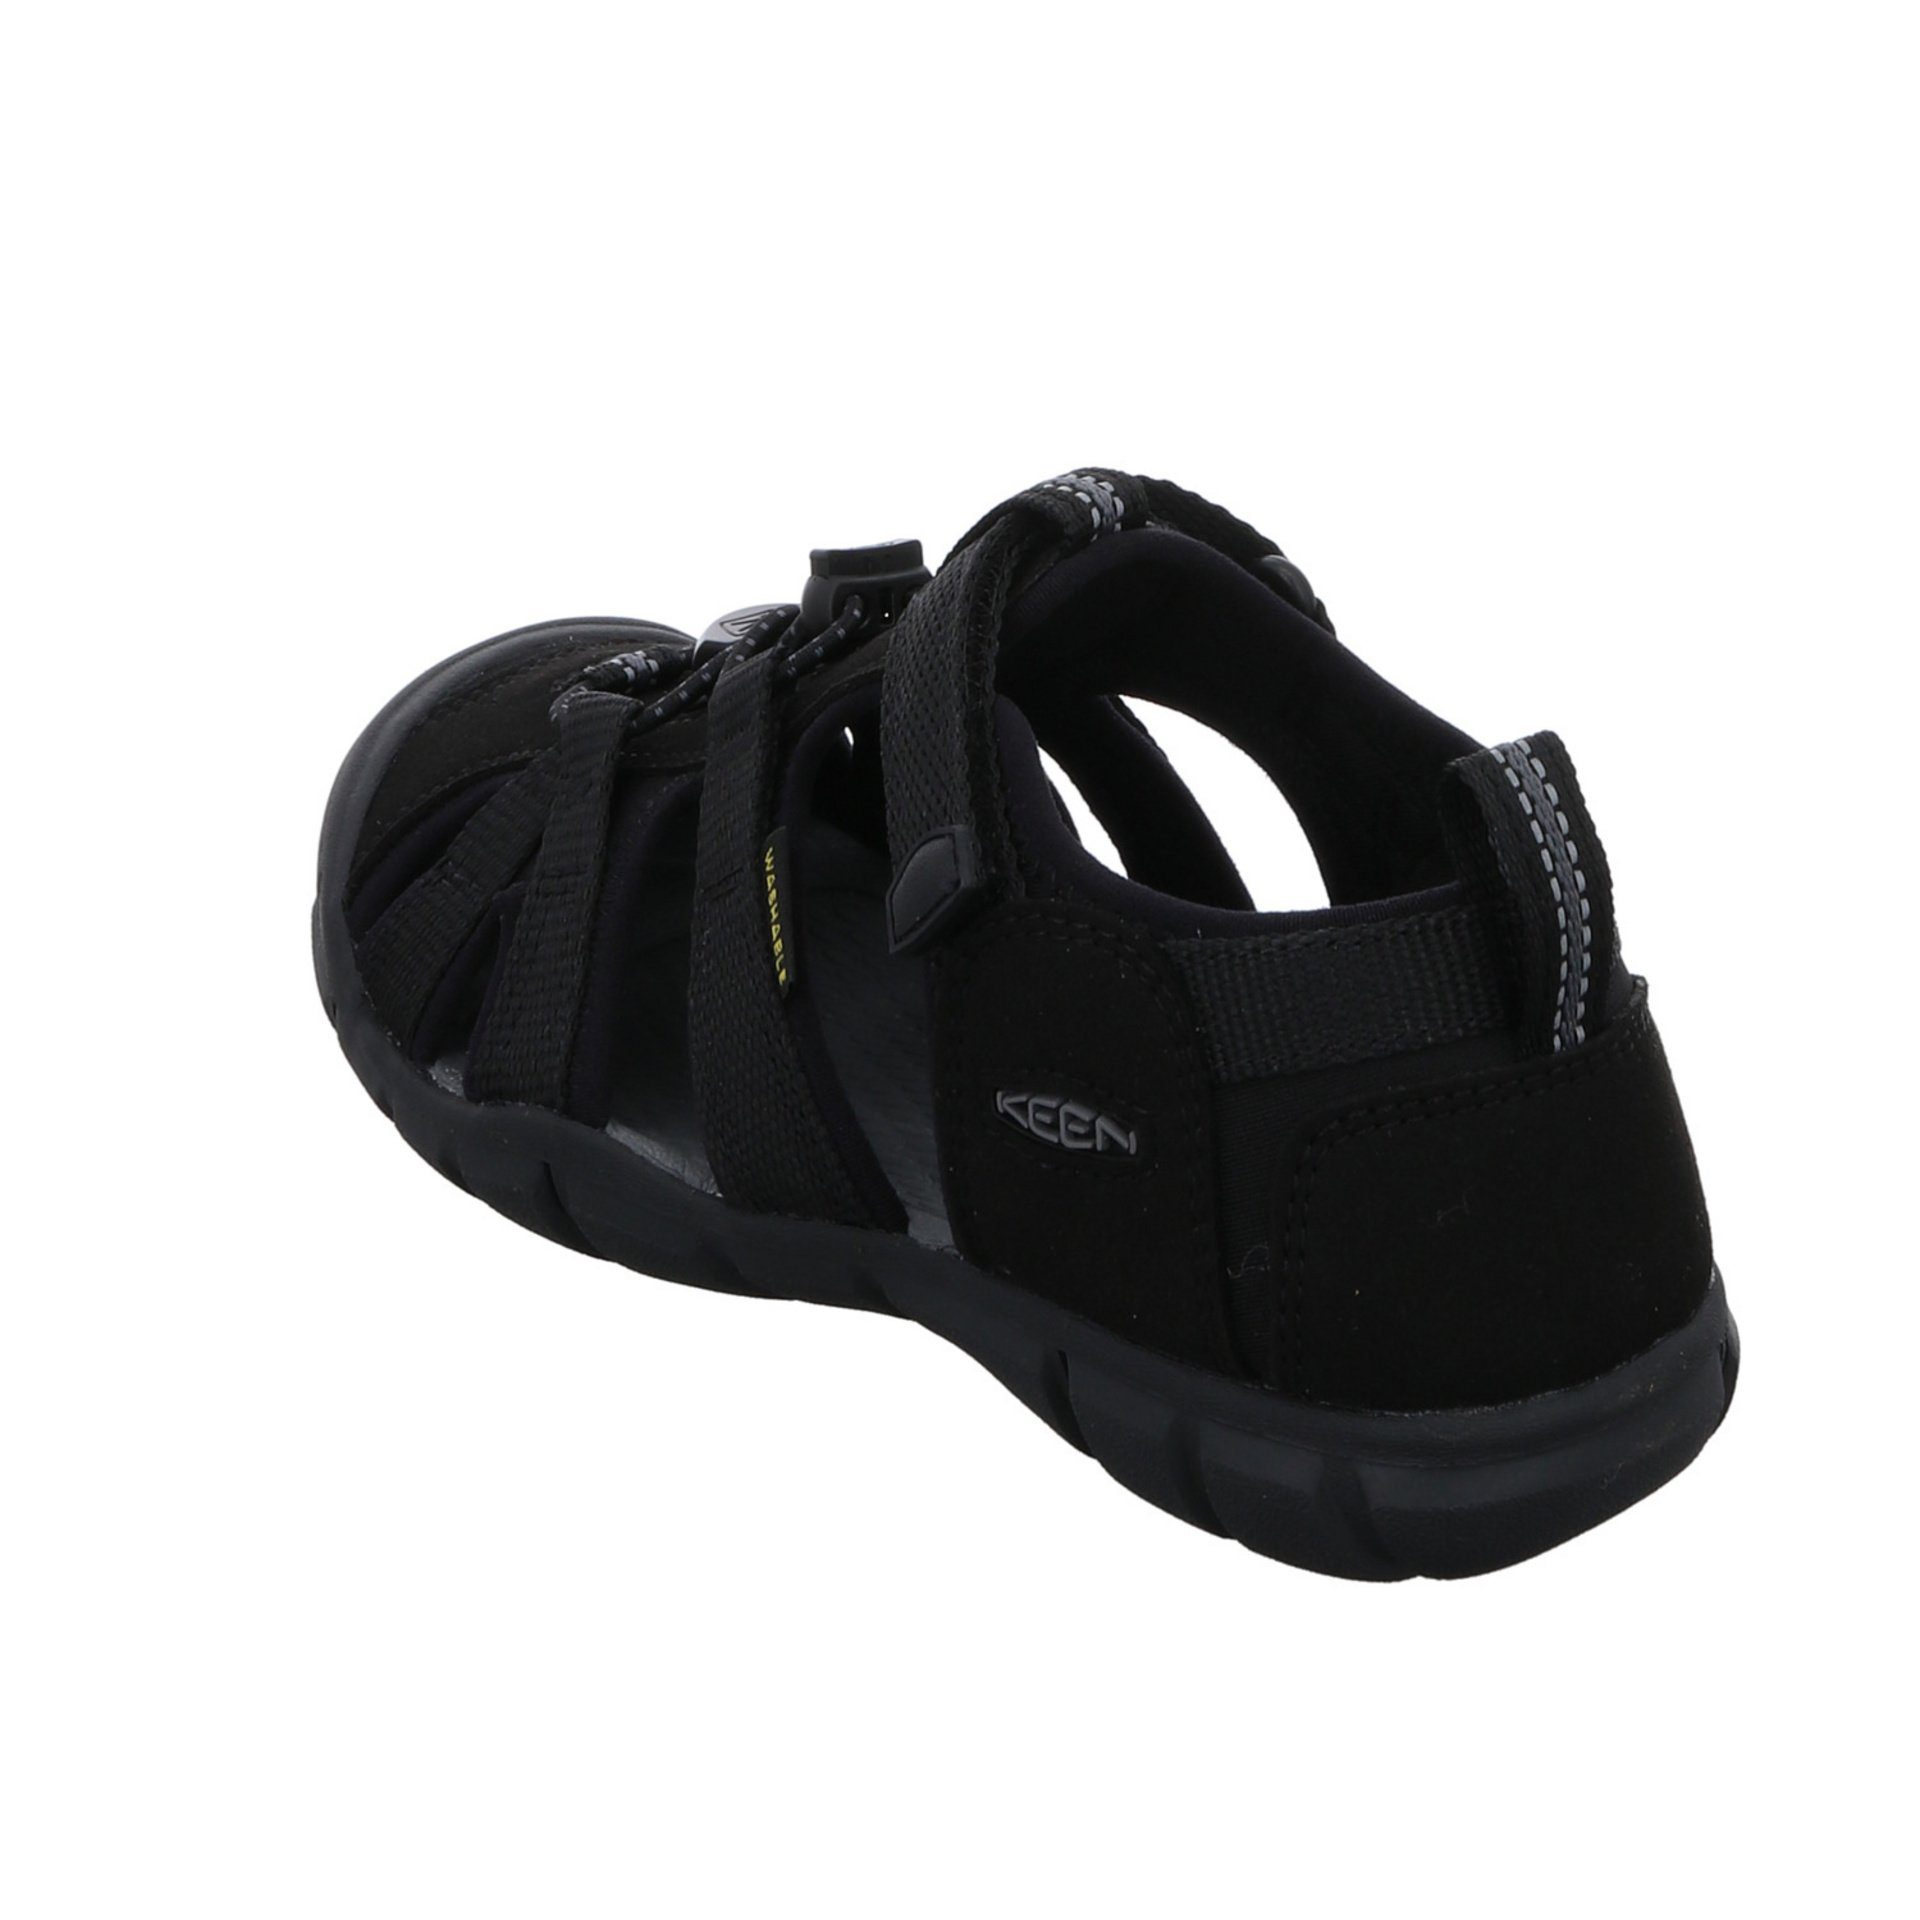 Schuhe Textil dunkel schwarz Keen Sandale Jungen Sandalen